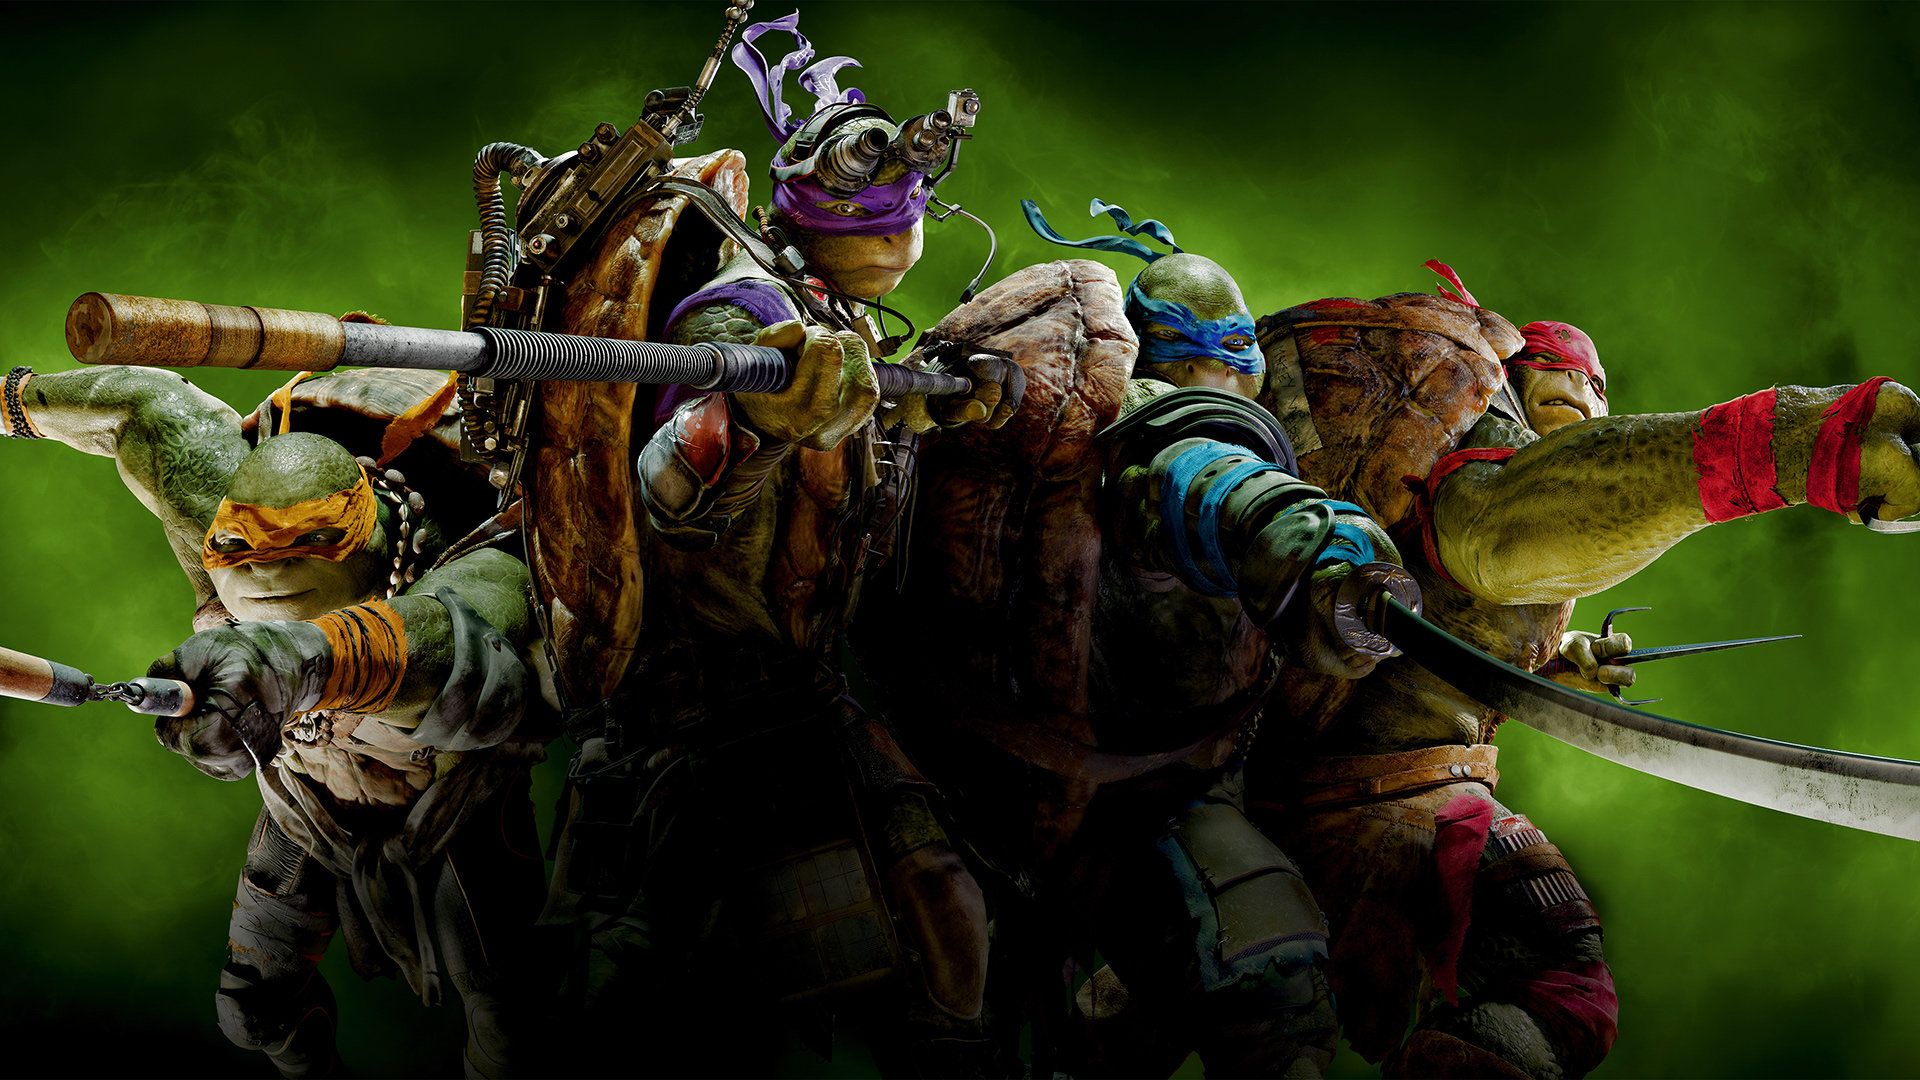 High resolution Teenage Mutant Ninja Turtles (2014) TMNT movie 1080p wallpaper ID:234215 for PC